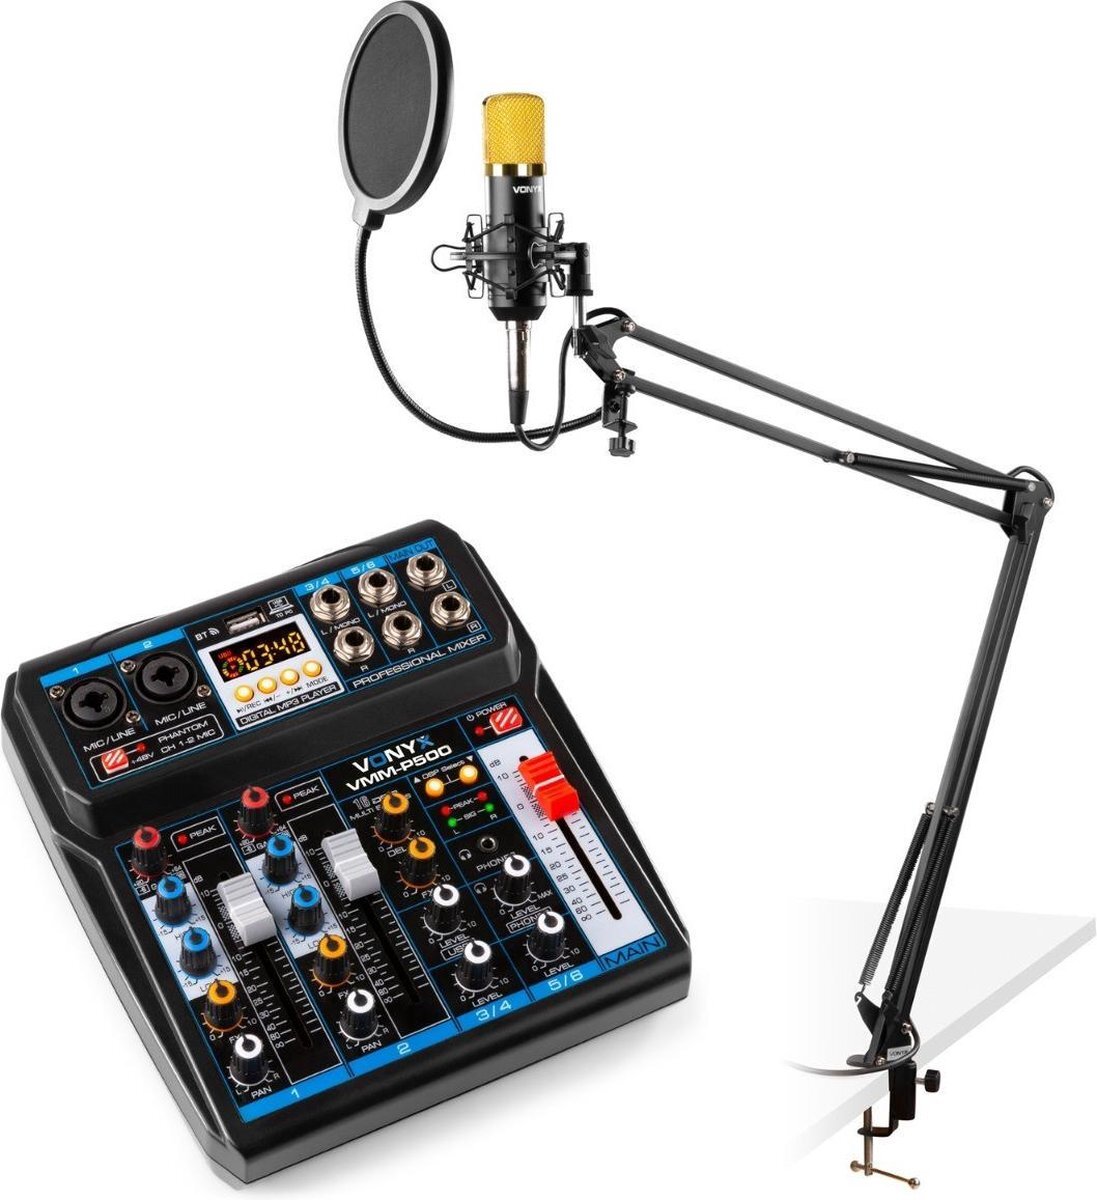 Vonyx podcast starterset met USB mixer met Bluetooth, CMS400B studiomicrofoon, verstelbare microfoonarm en shockmount.